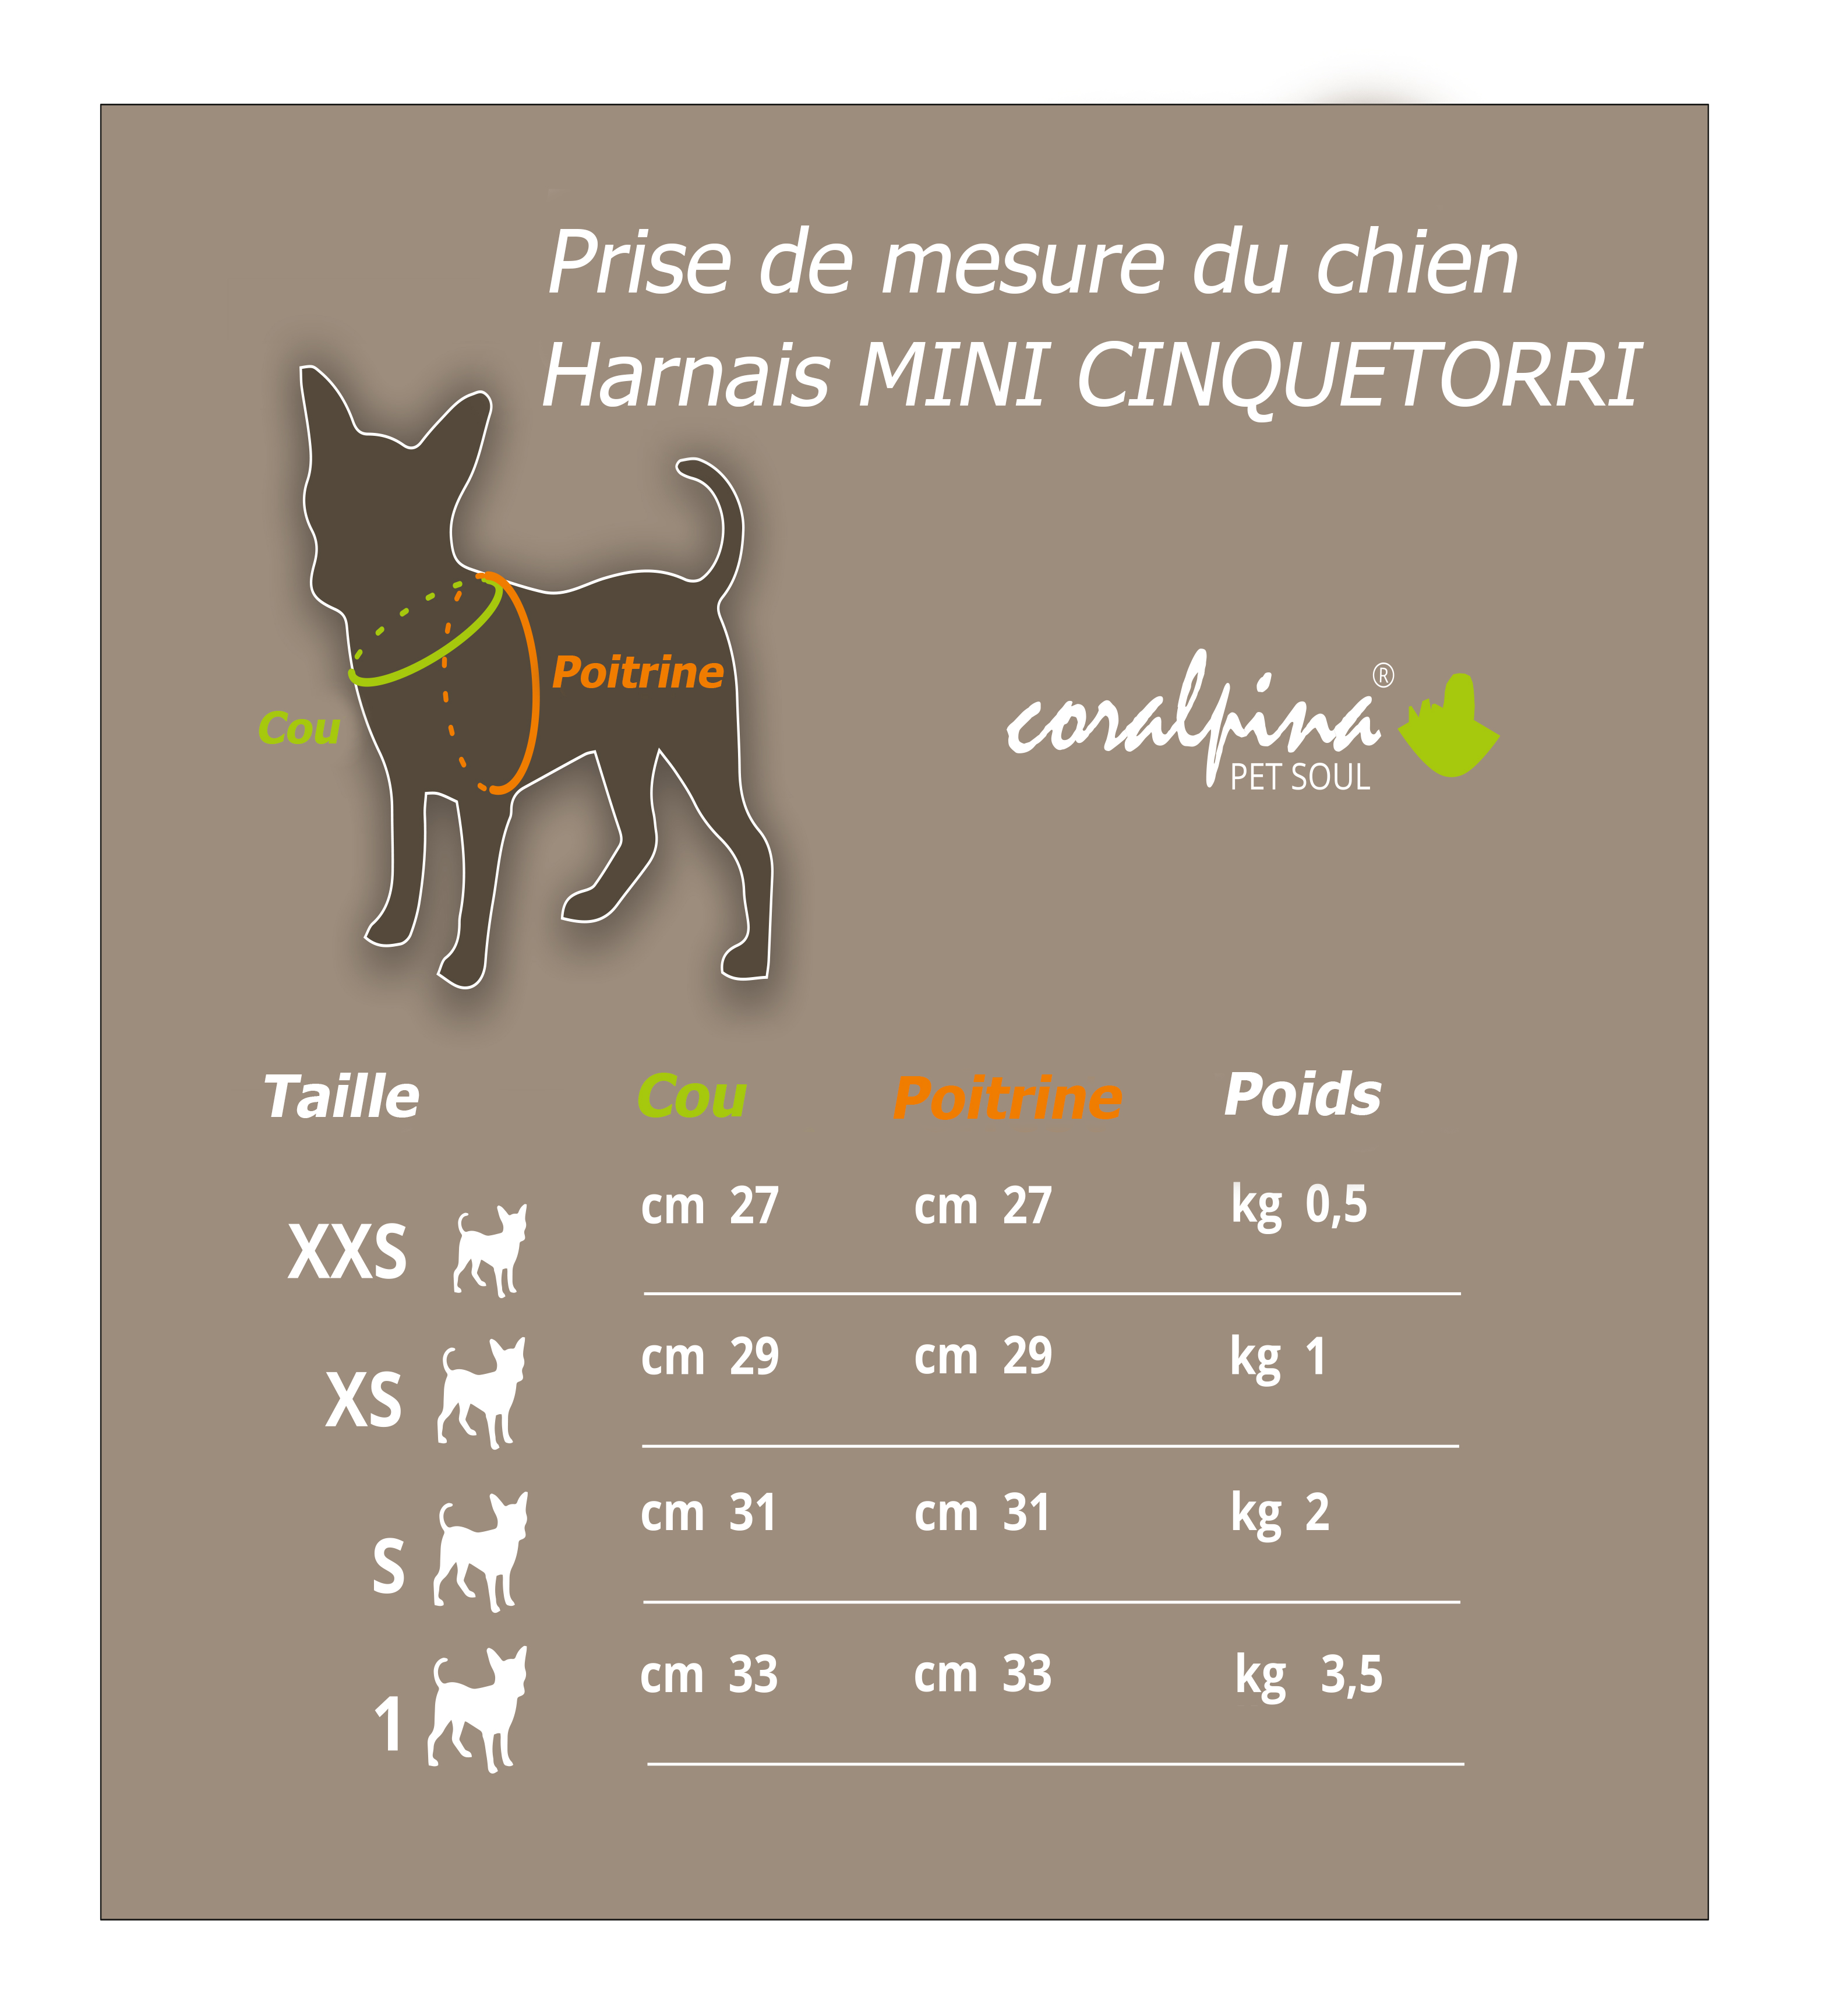 Harnais Petit Chien : Taille Par Race - Chien et Chiot